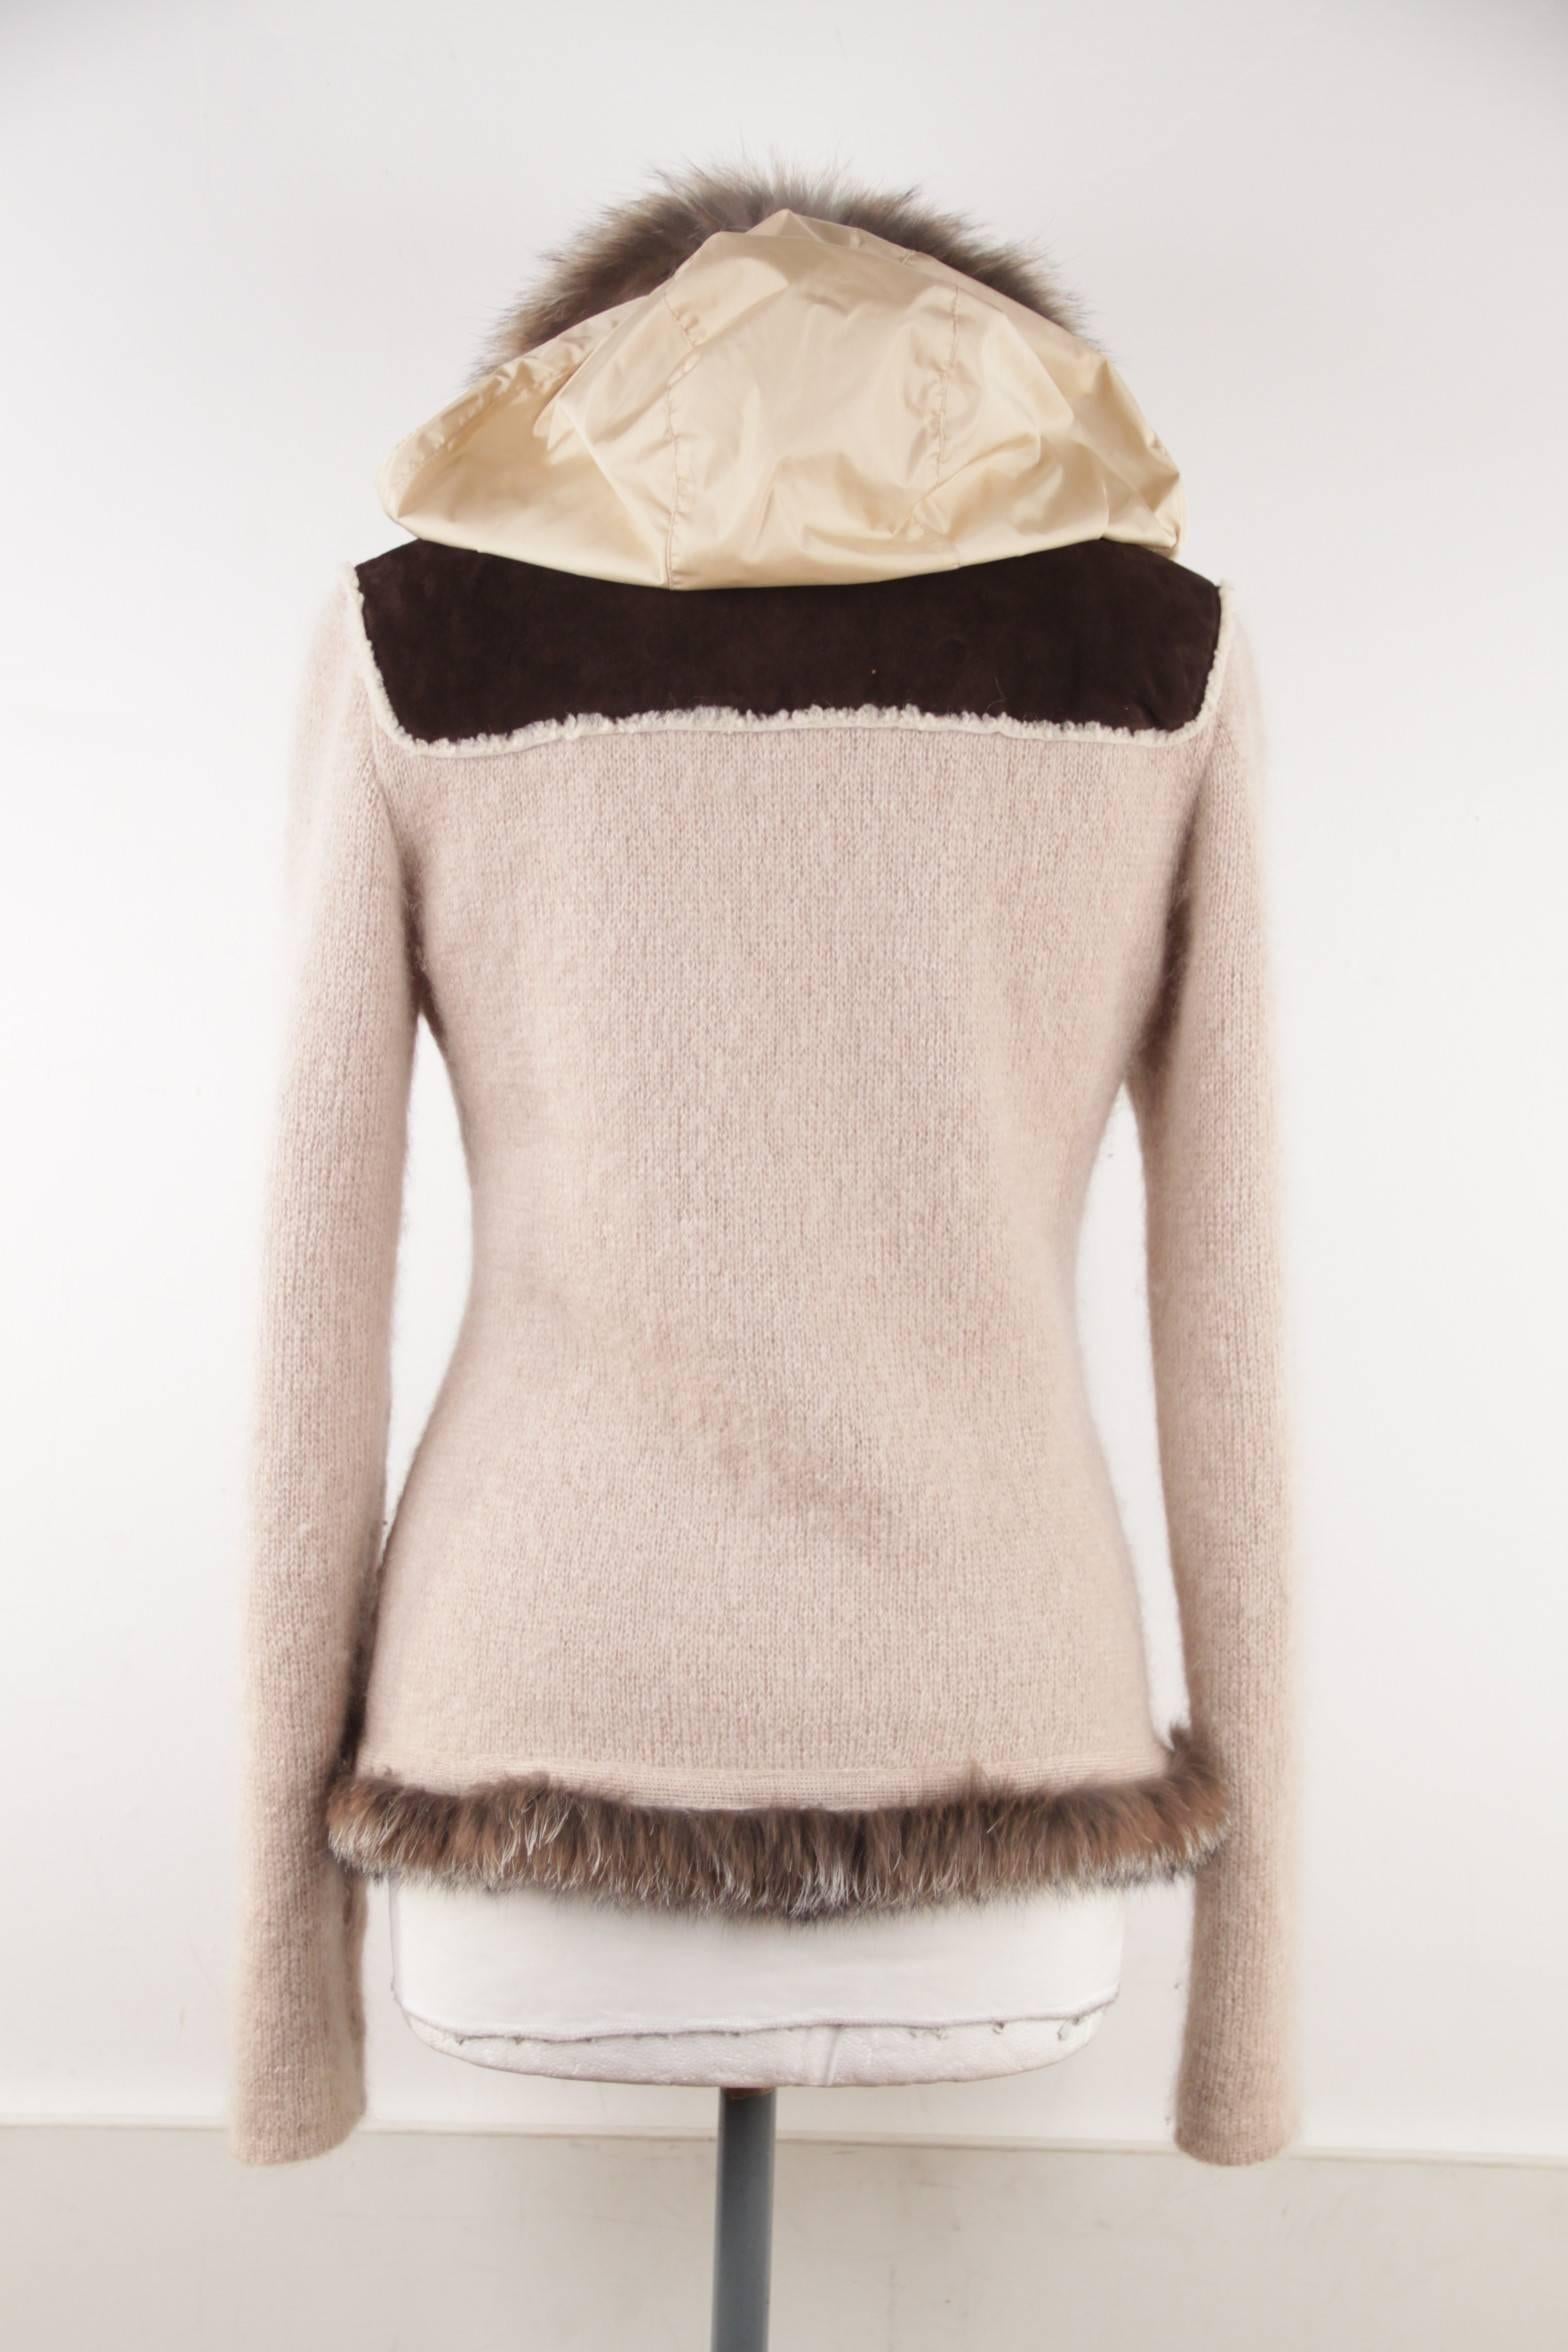 PRADA Italian Beige Wool Blend KNIT CARDIGAN Sweater w/ FOX FUR TRIM Size 42 IT  3